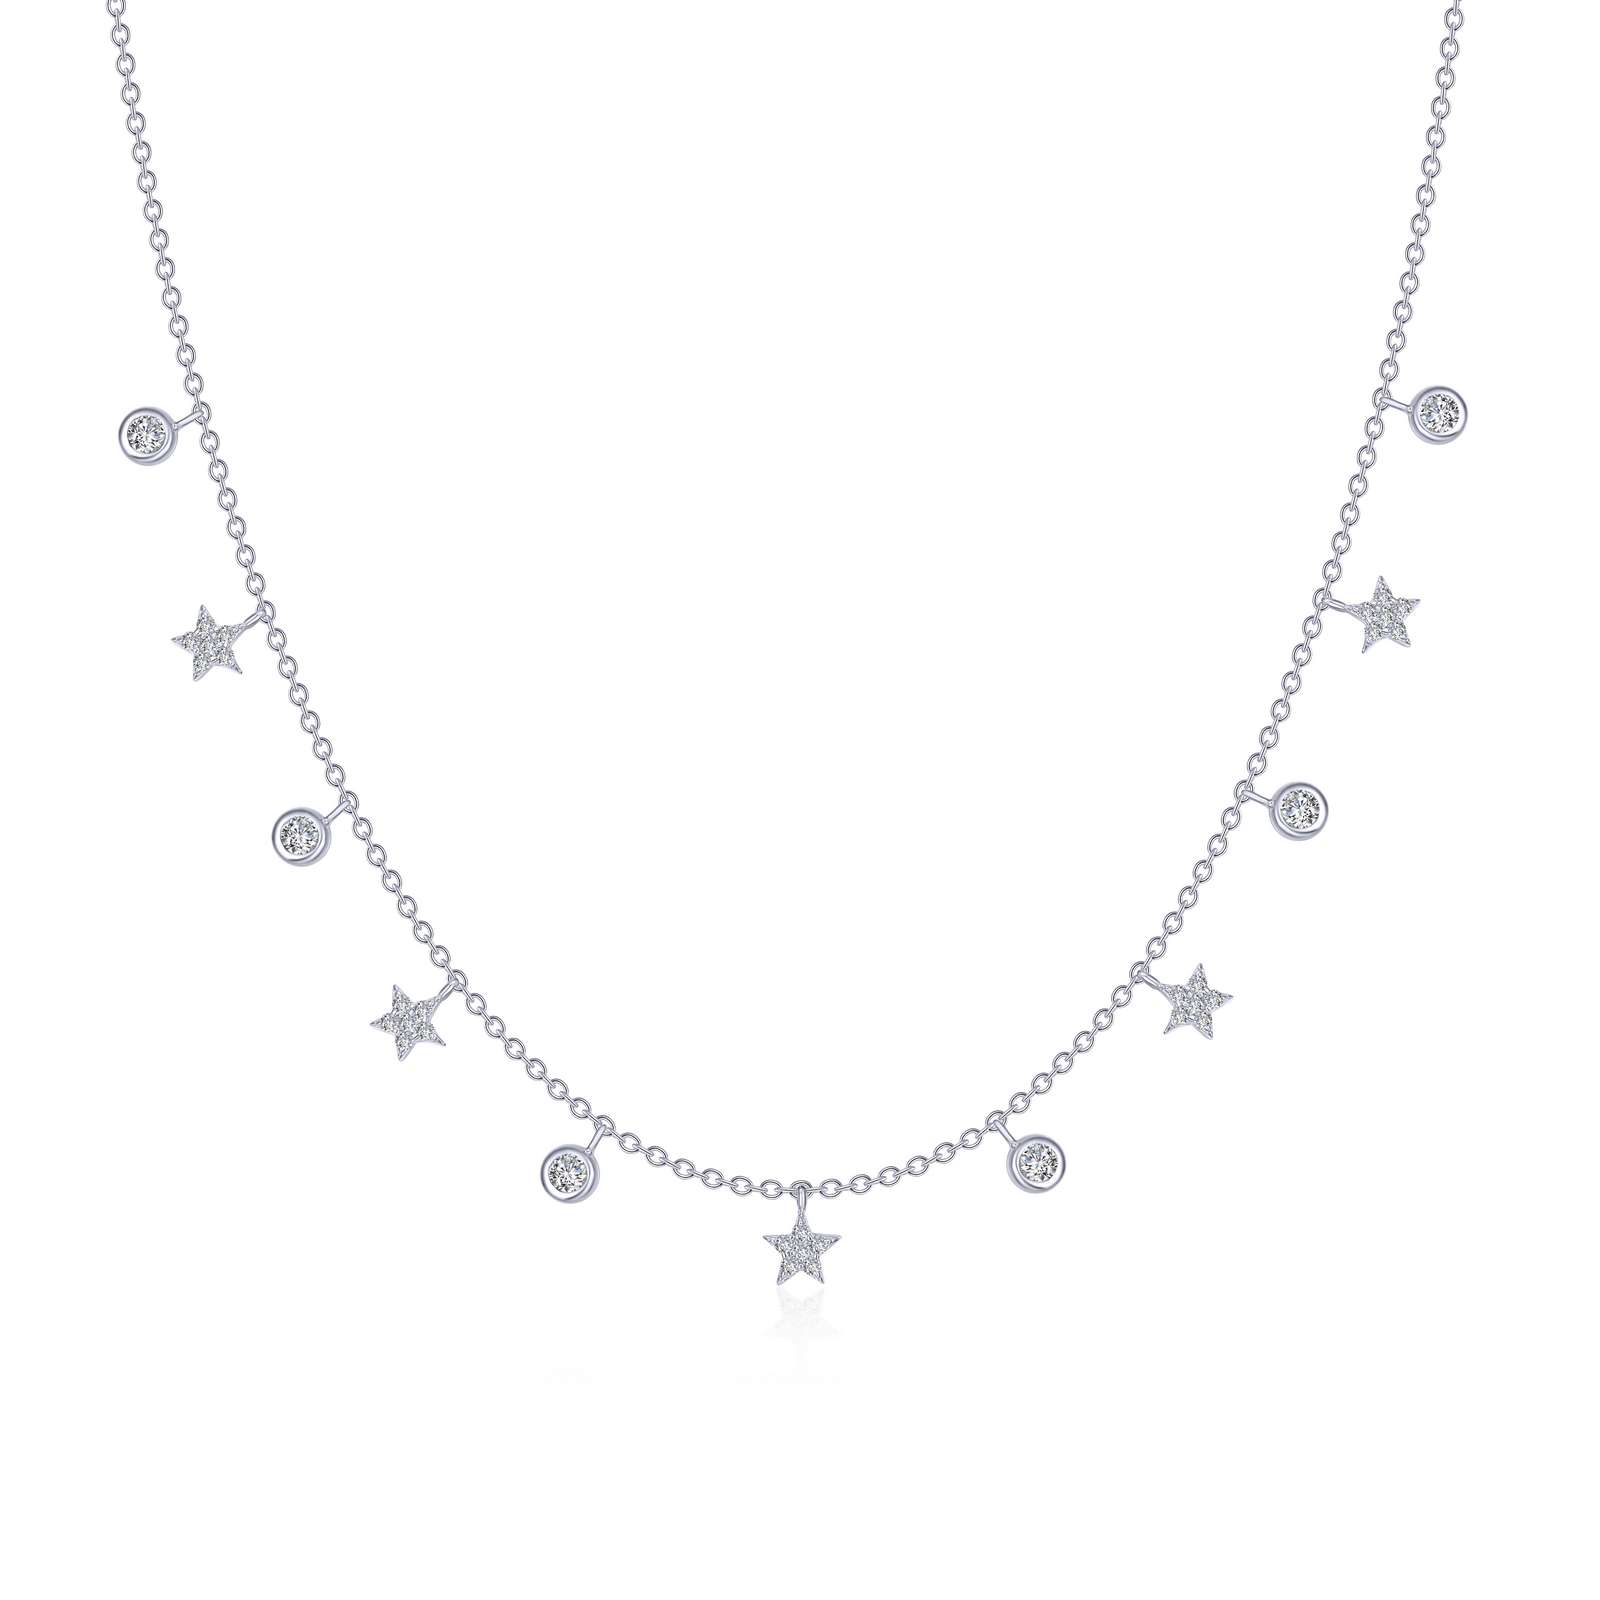 Starfall Necklace 20'' | Lafonn | Luby 